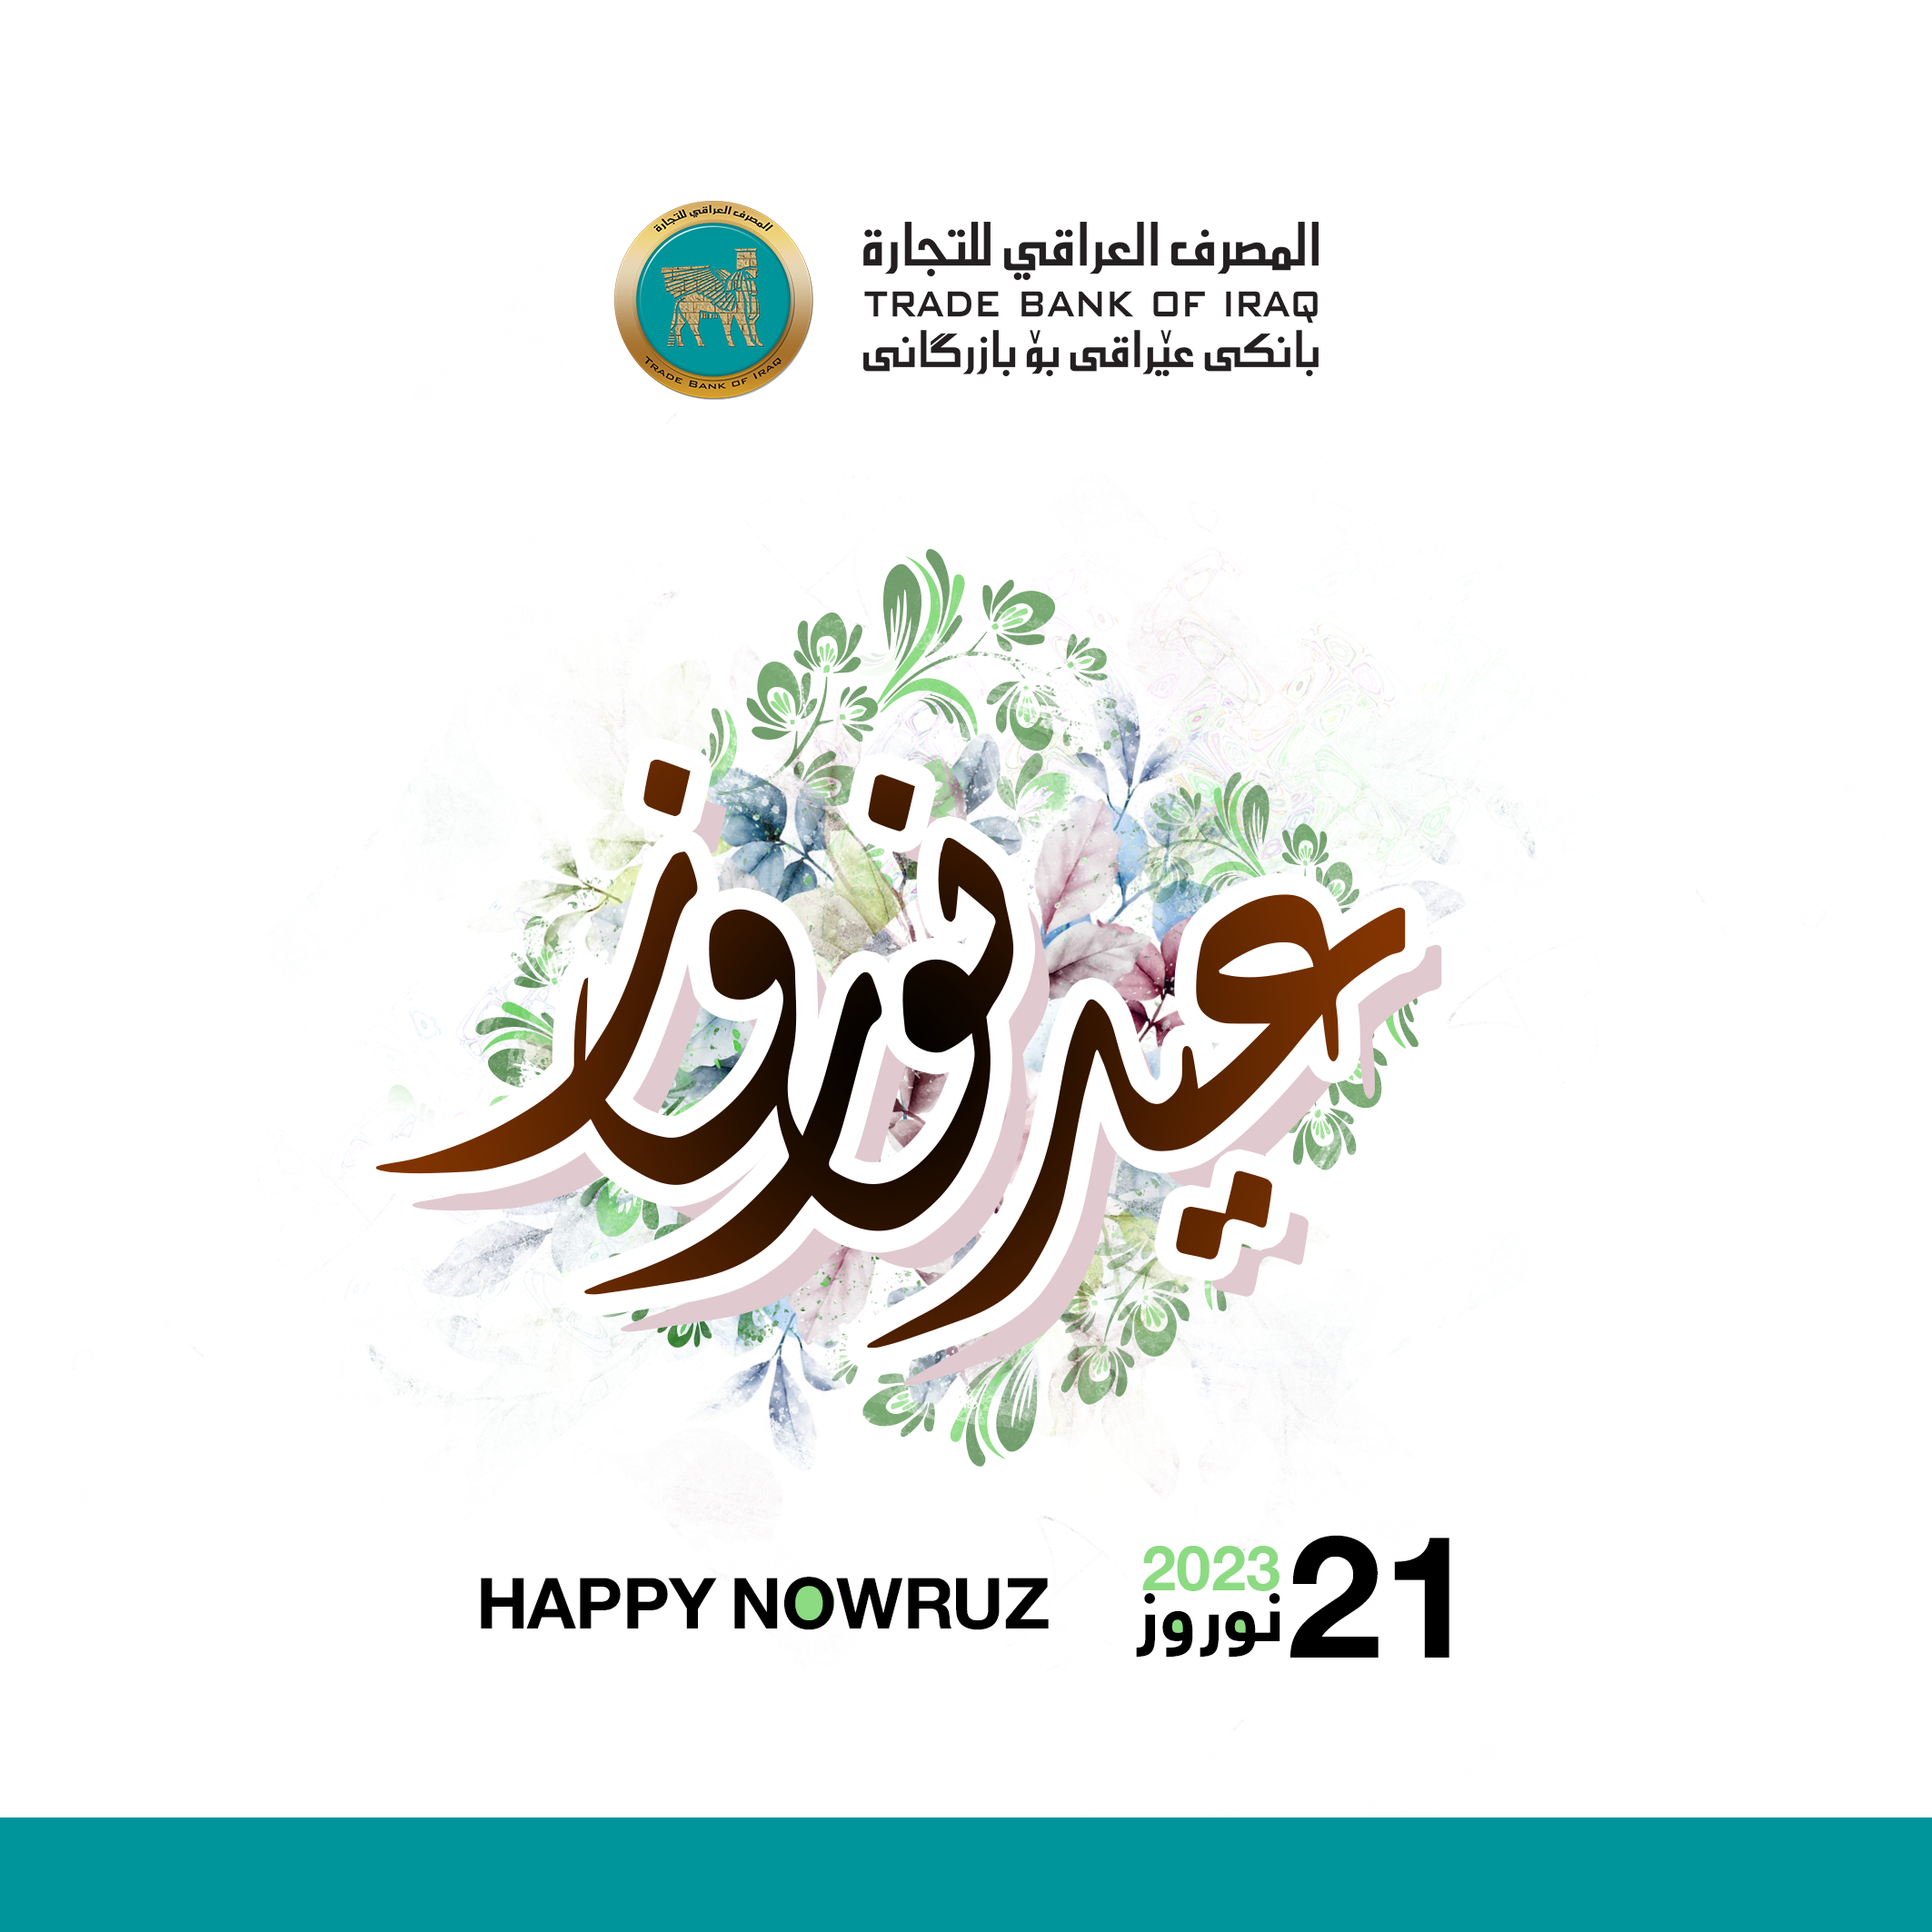 أجمل التهاني والتبريكات إلى جميع أبناء شعبنا العراقي العزيز، عيد نوروز سعيد وكل عام وأنتم بألف خــيــــر.